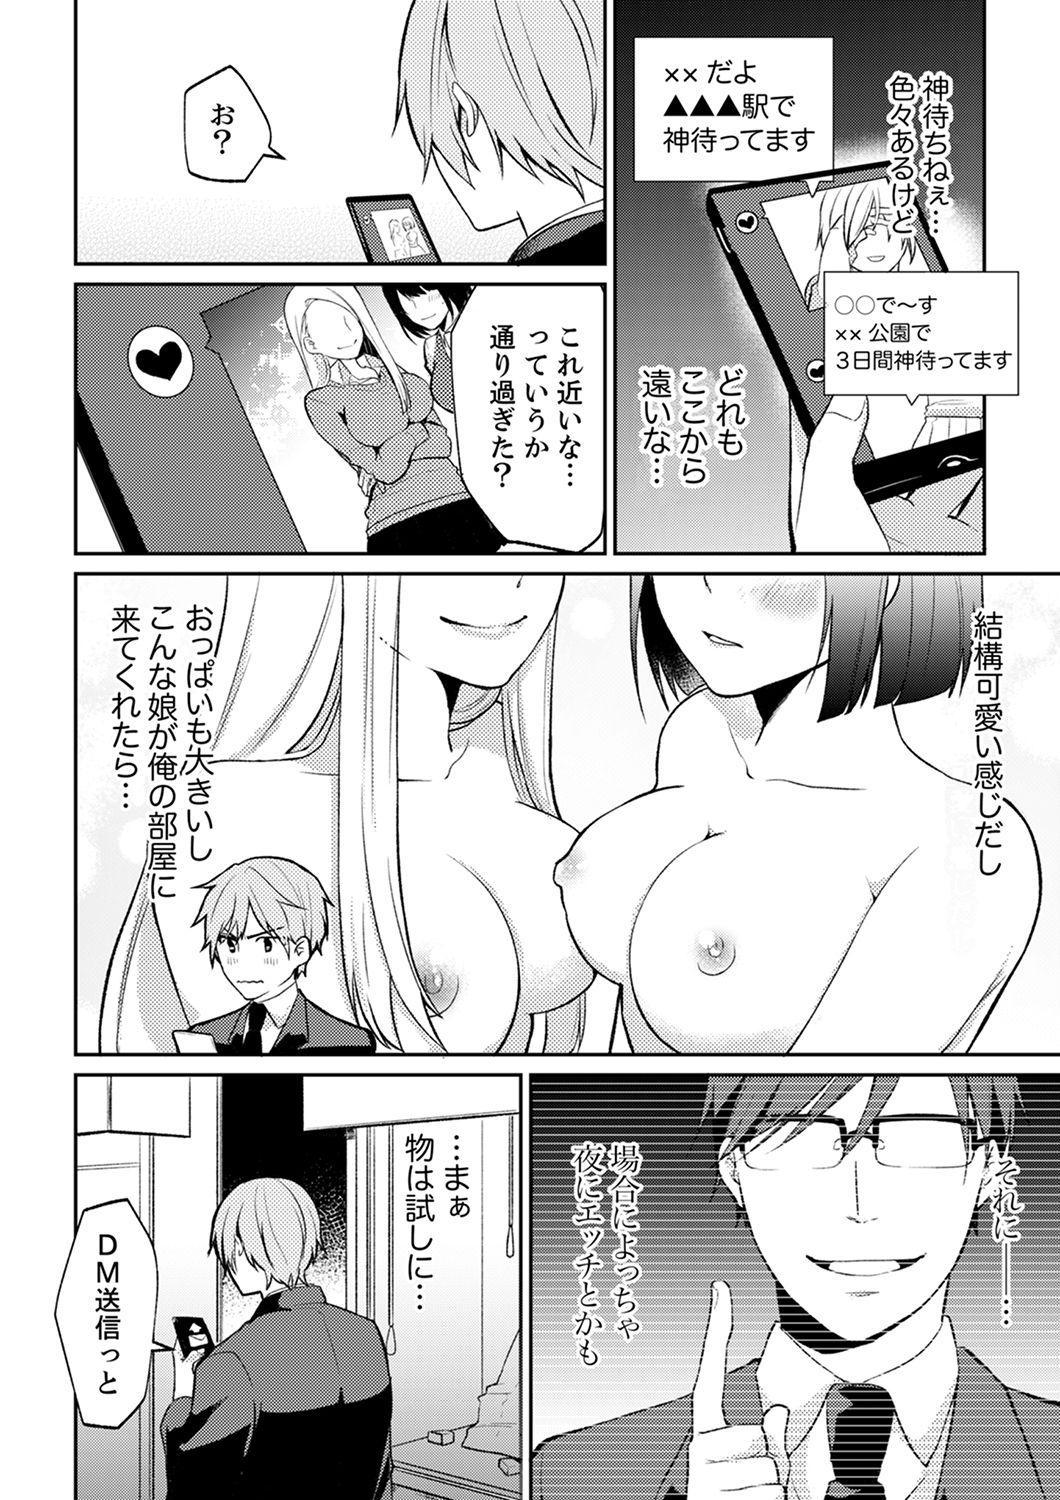 Gay Military Tachippanashi no Sore... Irechau no? "Kamimachi" Shiteta Joshi o Omochikaeri Shite... Skype - Page 6